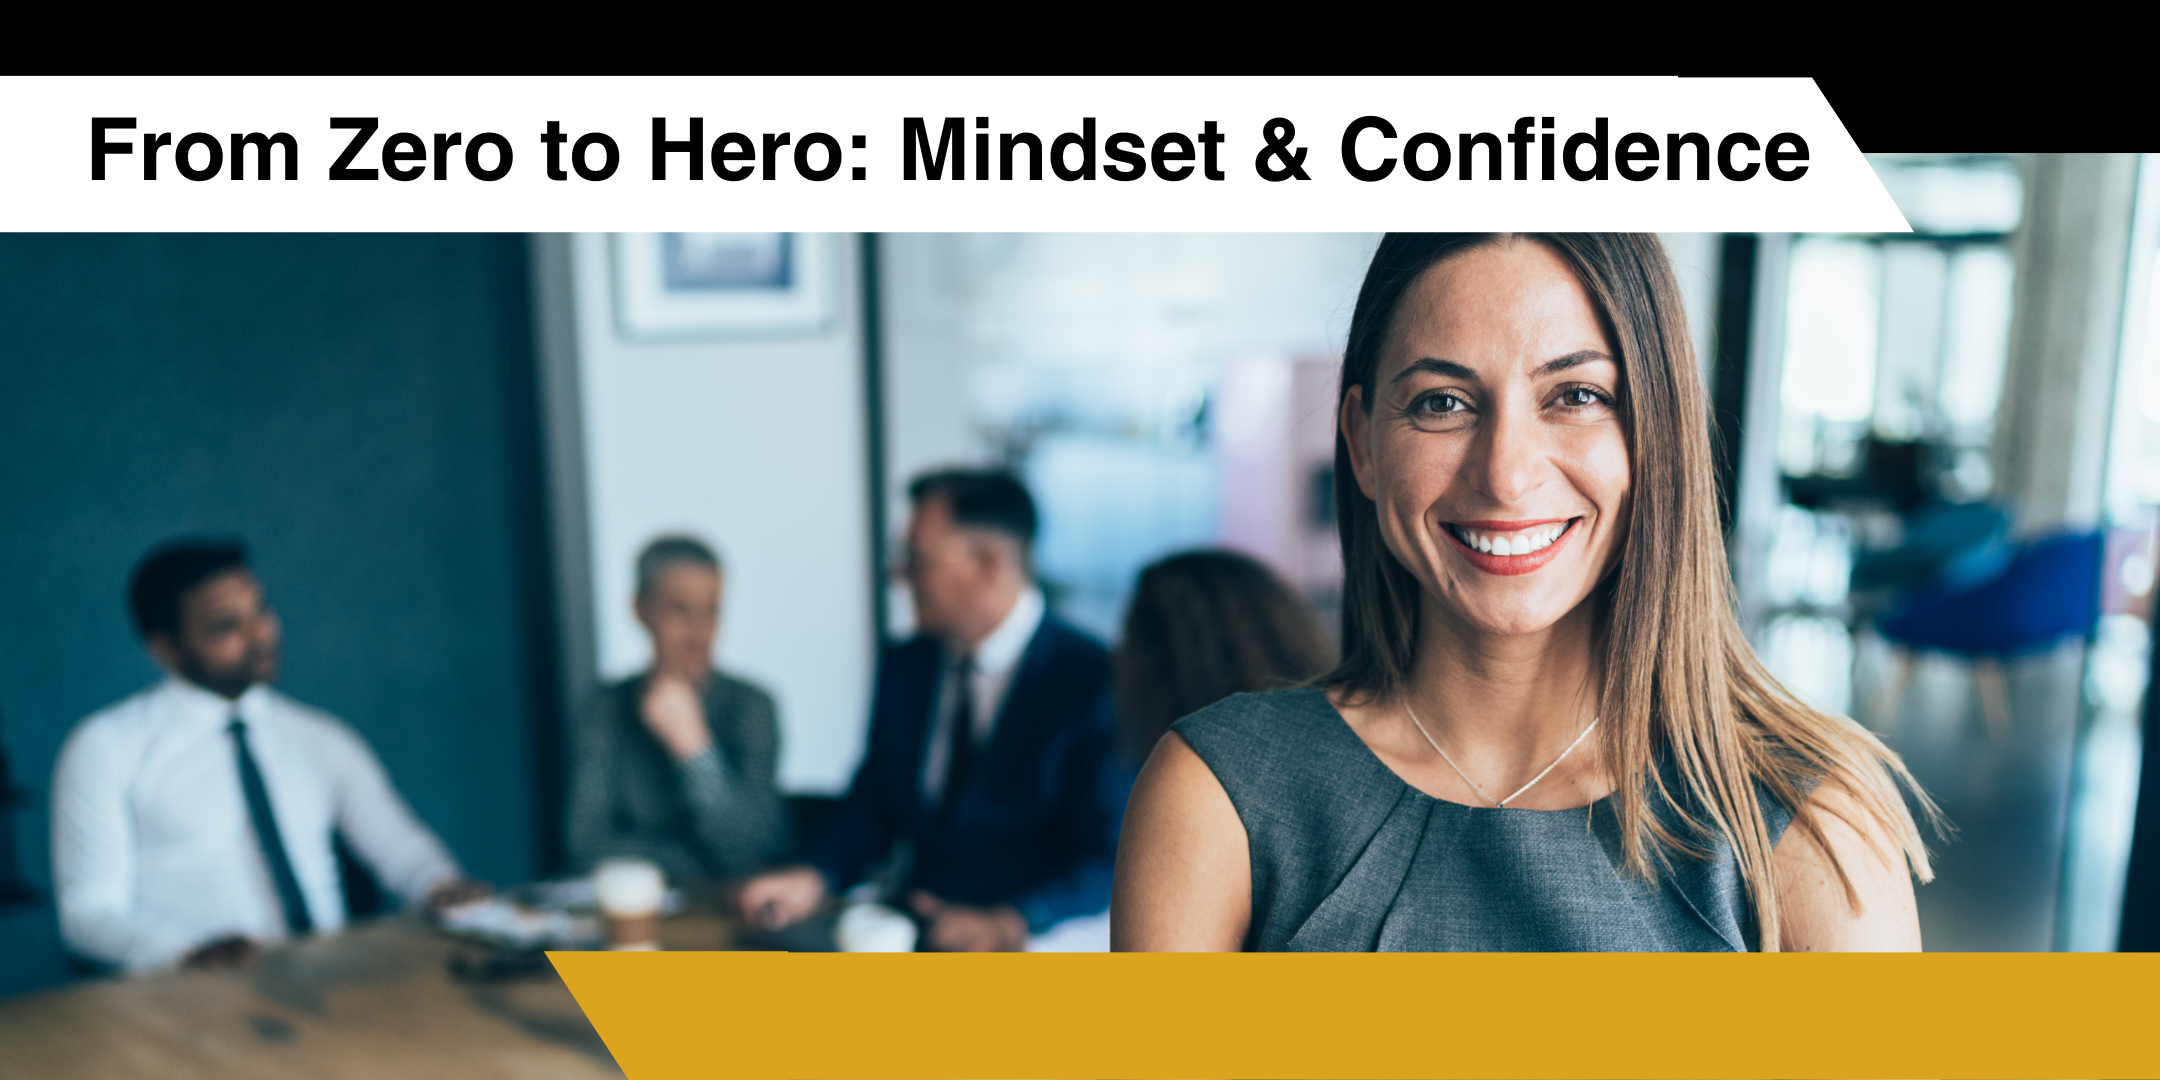 Go from Zero to Hero: Mindset & Confidence